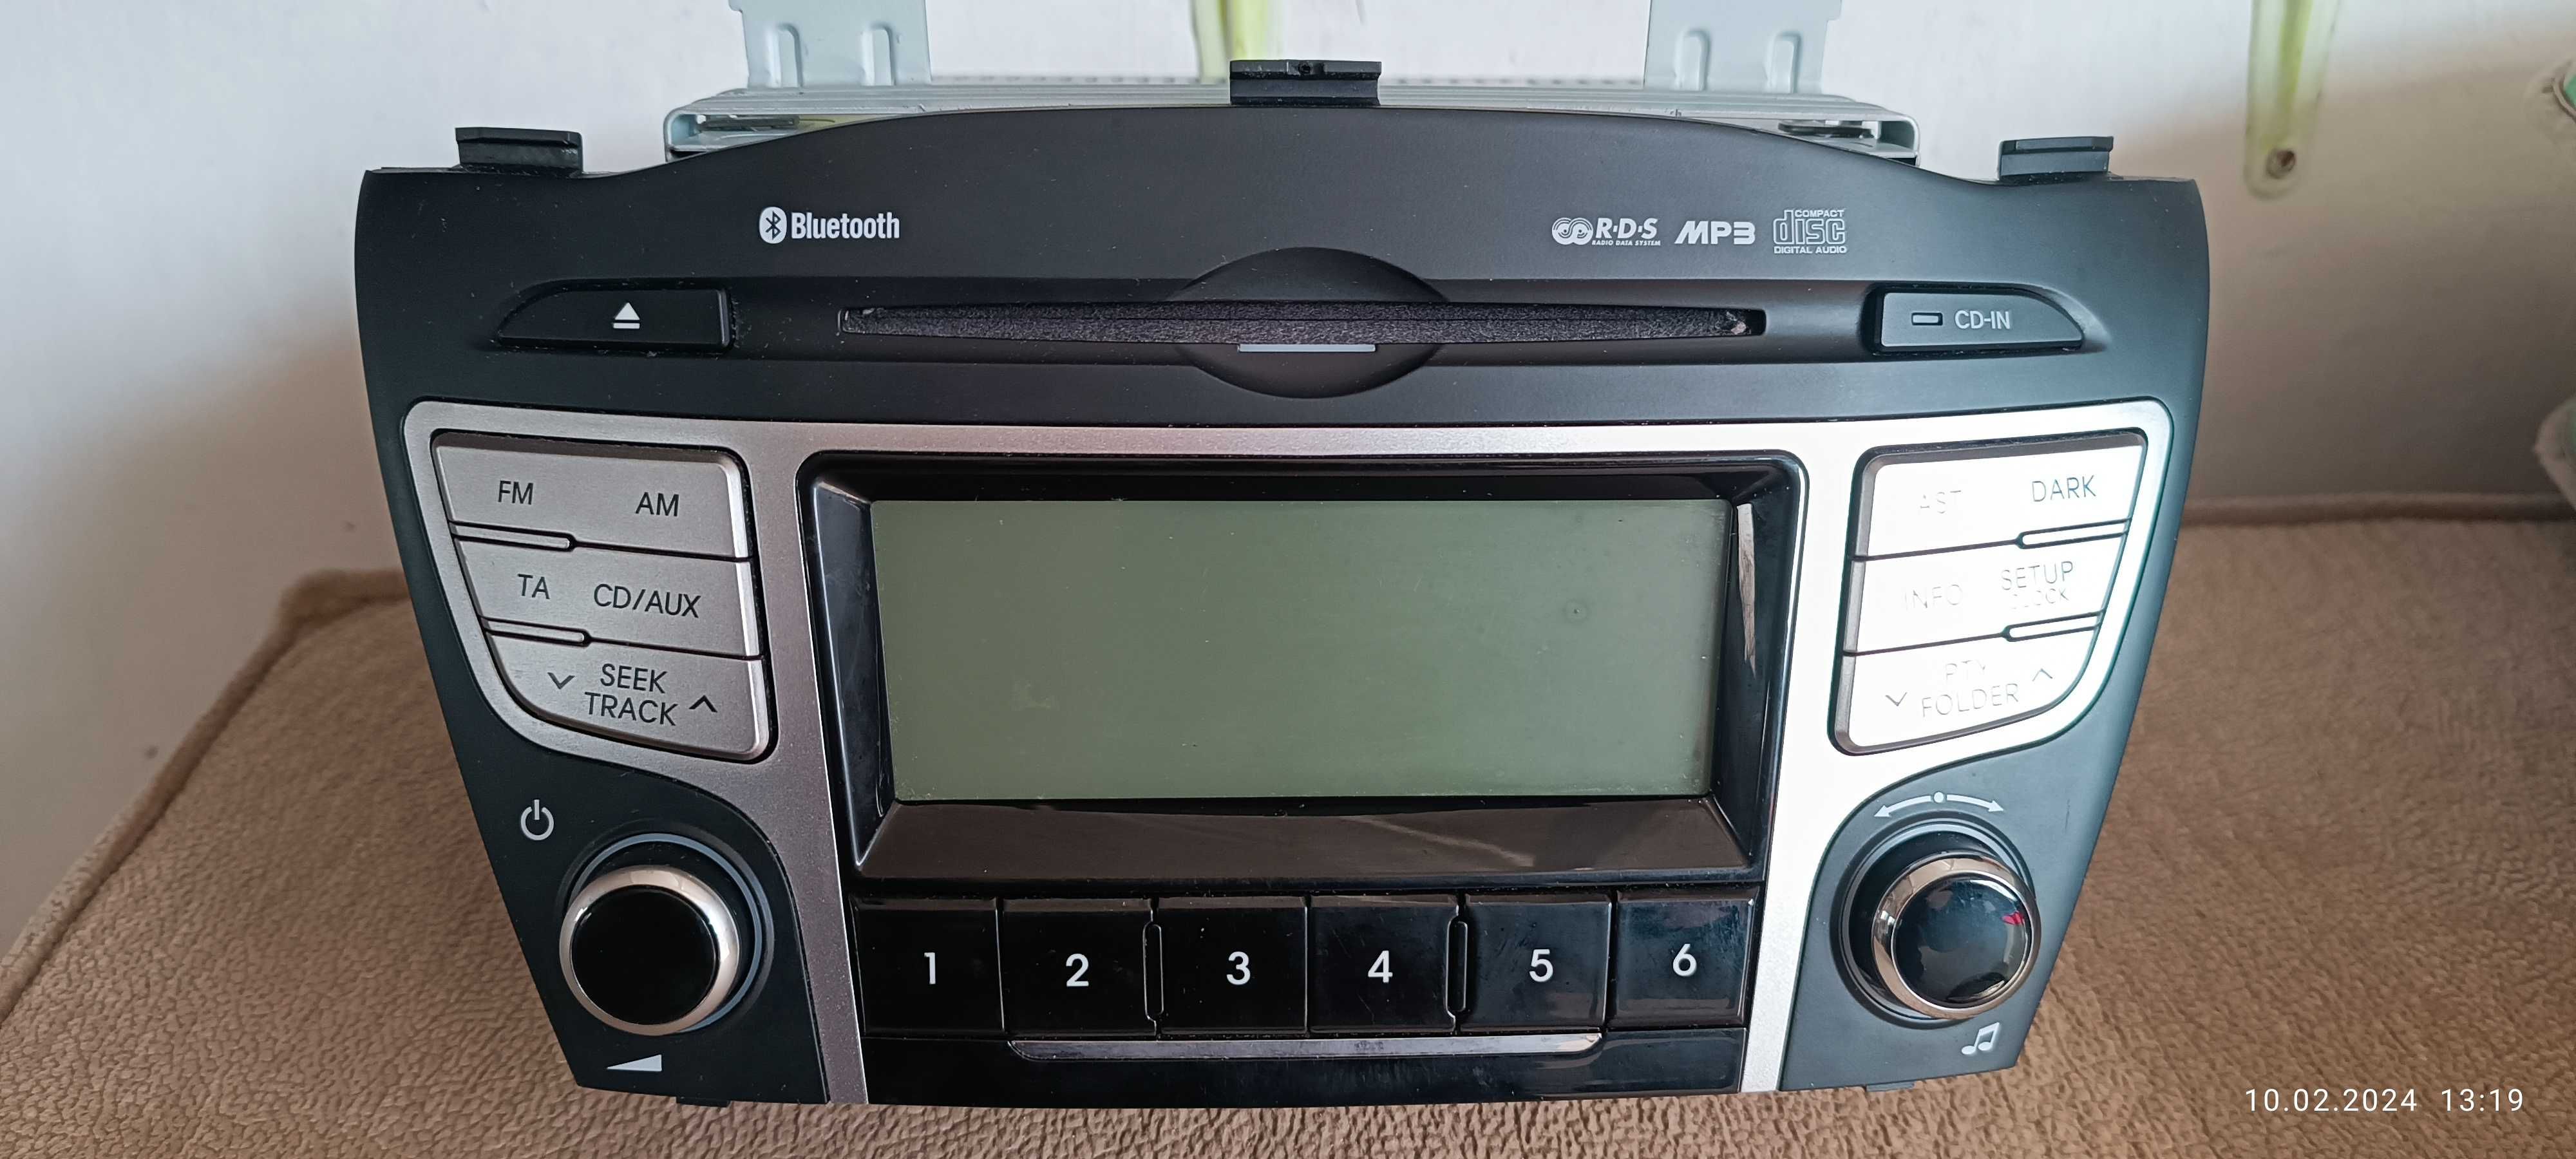 Radio samochodowe fabryczne przeznaczone do samochodu Hiundai IX35